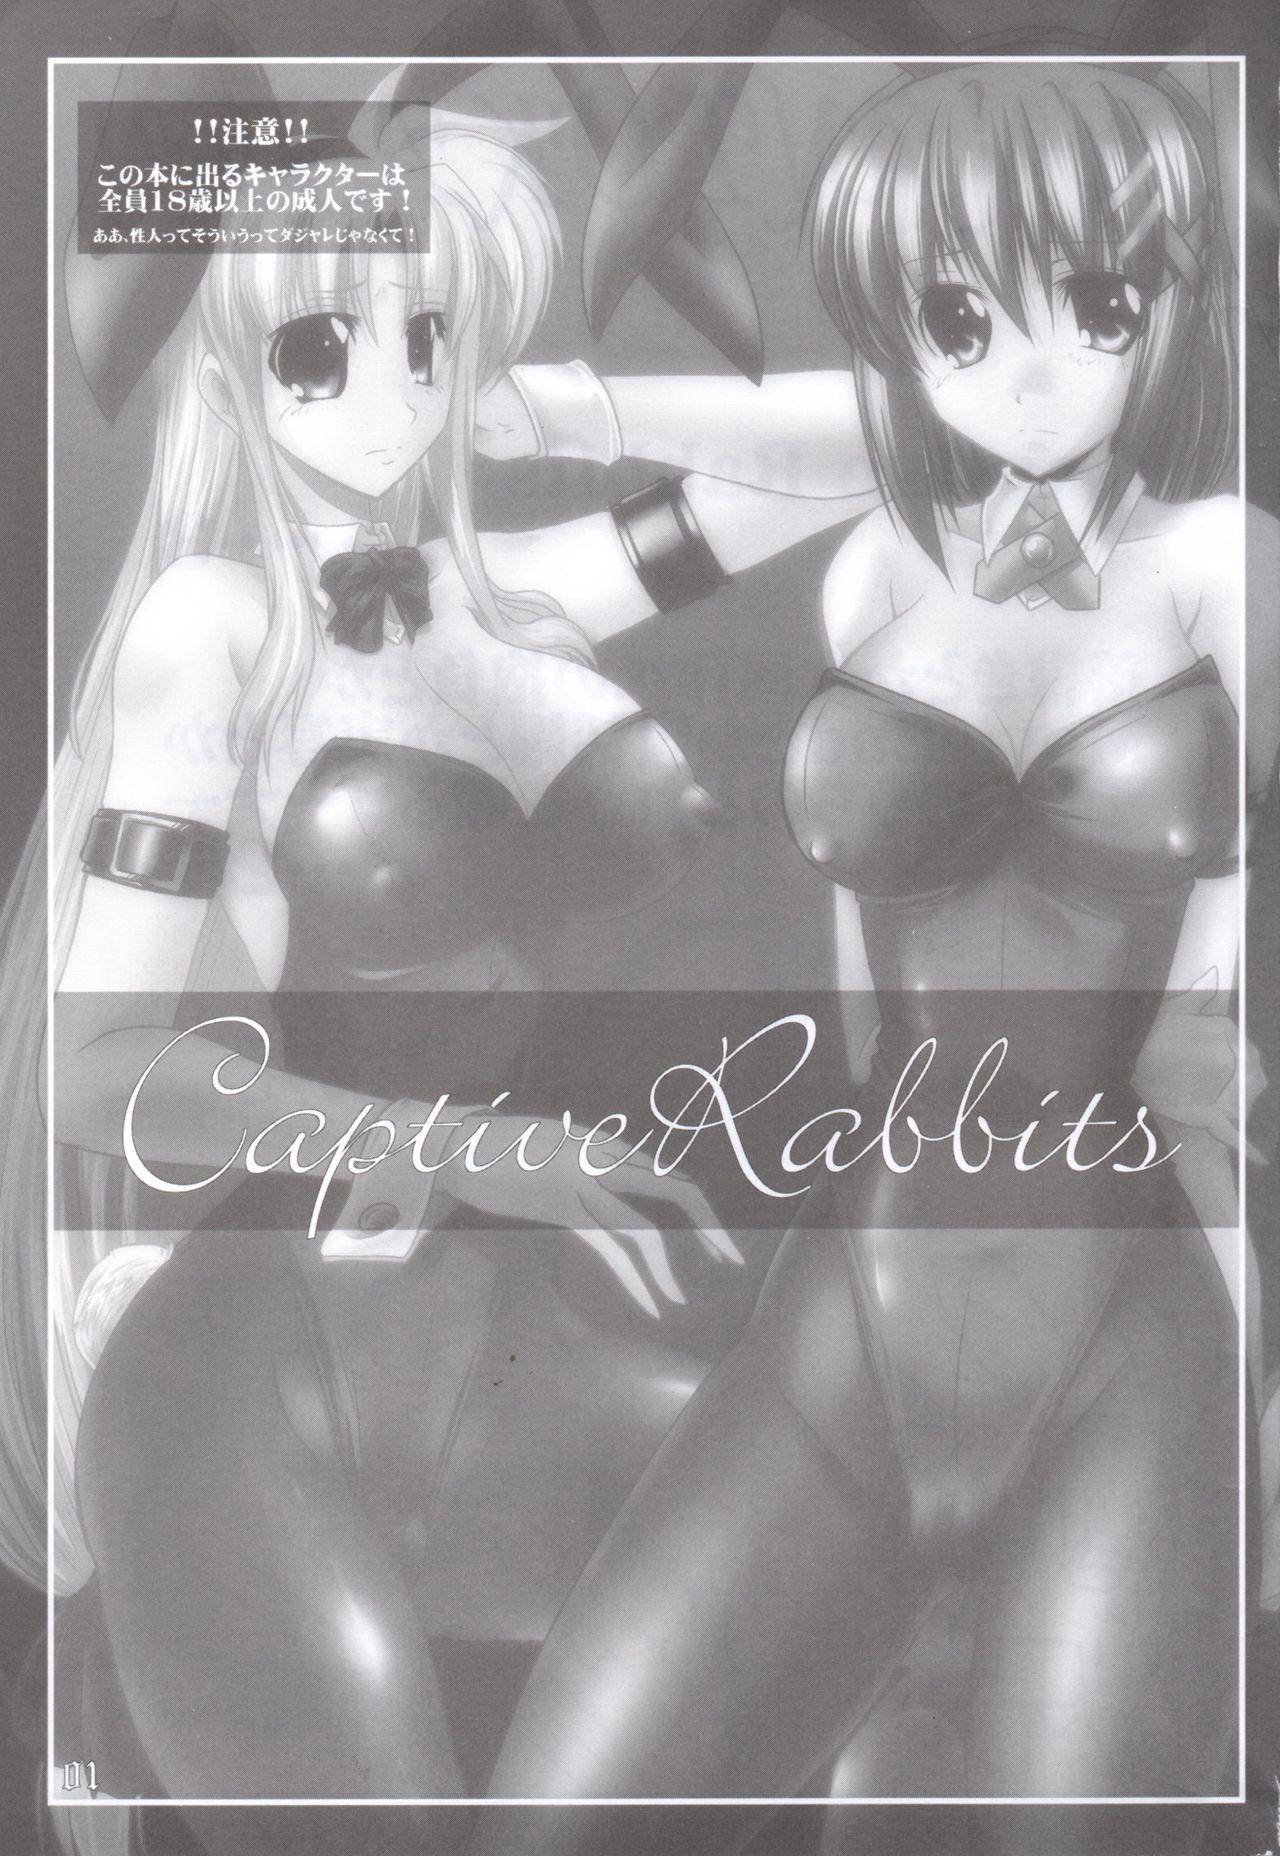 Super Captive Rabbitl - Mahou shoujo lyrical nanoha Hot Teen - Page 2